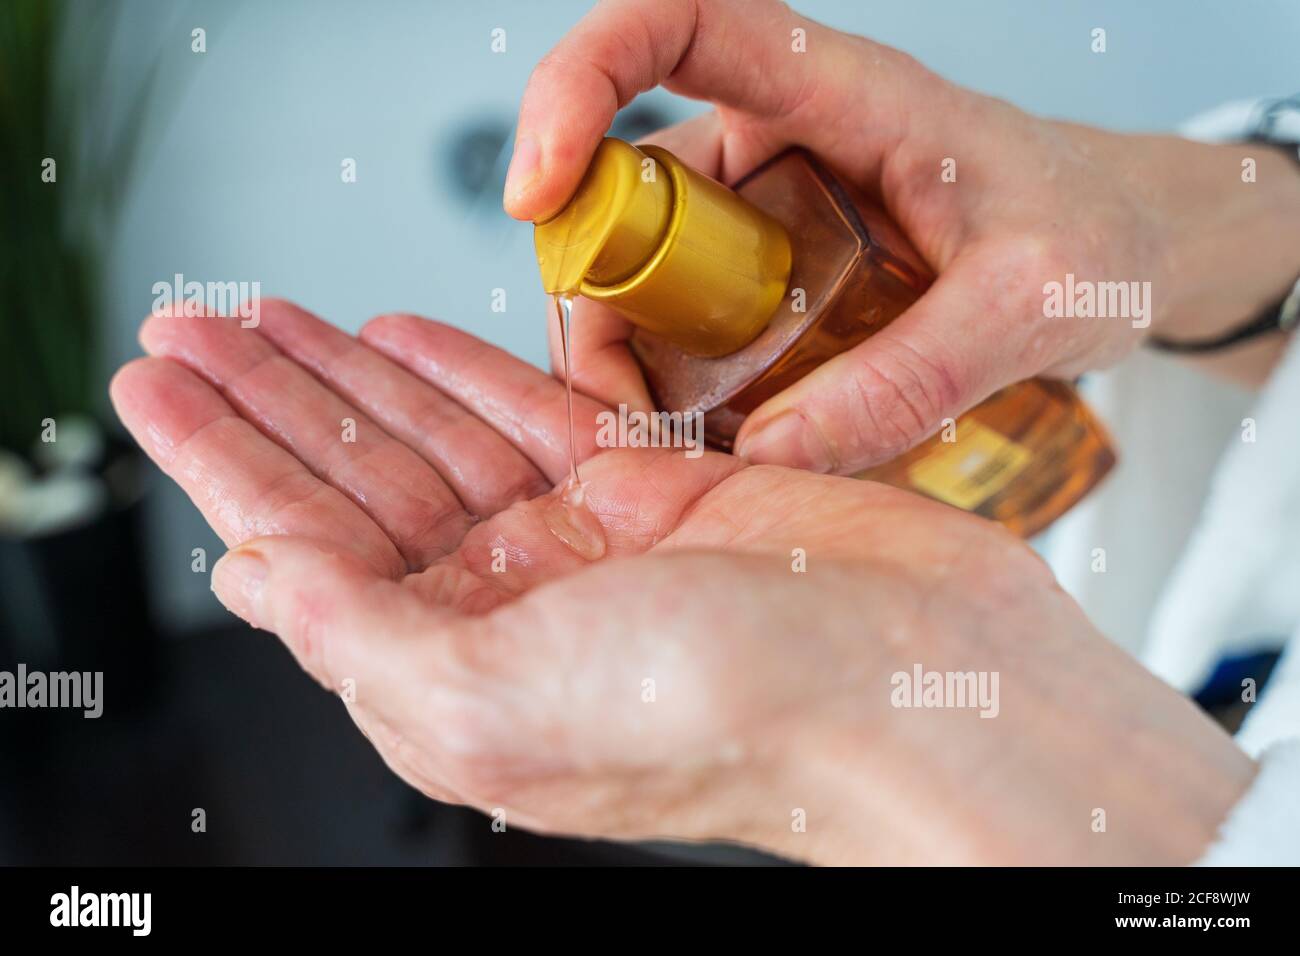 Cosecha hembra adulta de pie en el cuarto de baño con botella de plástico y. uso de líquido para el cabello en la mano para el tratamiento del cabello Foto de stock